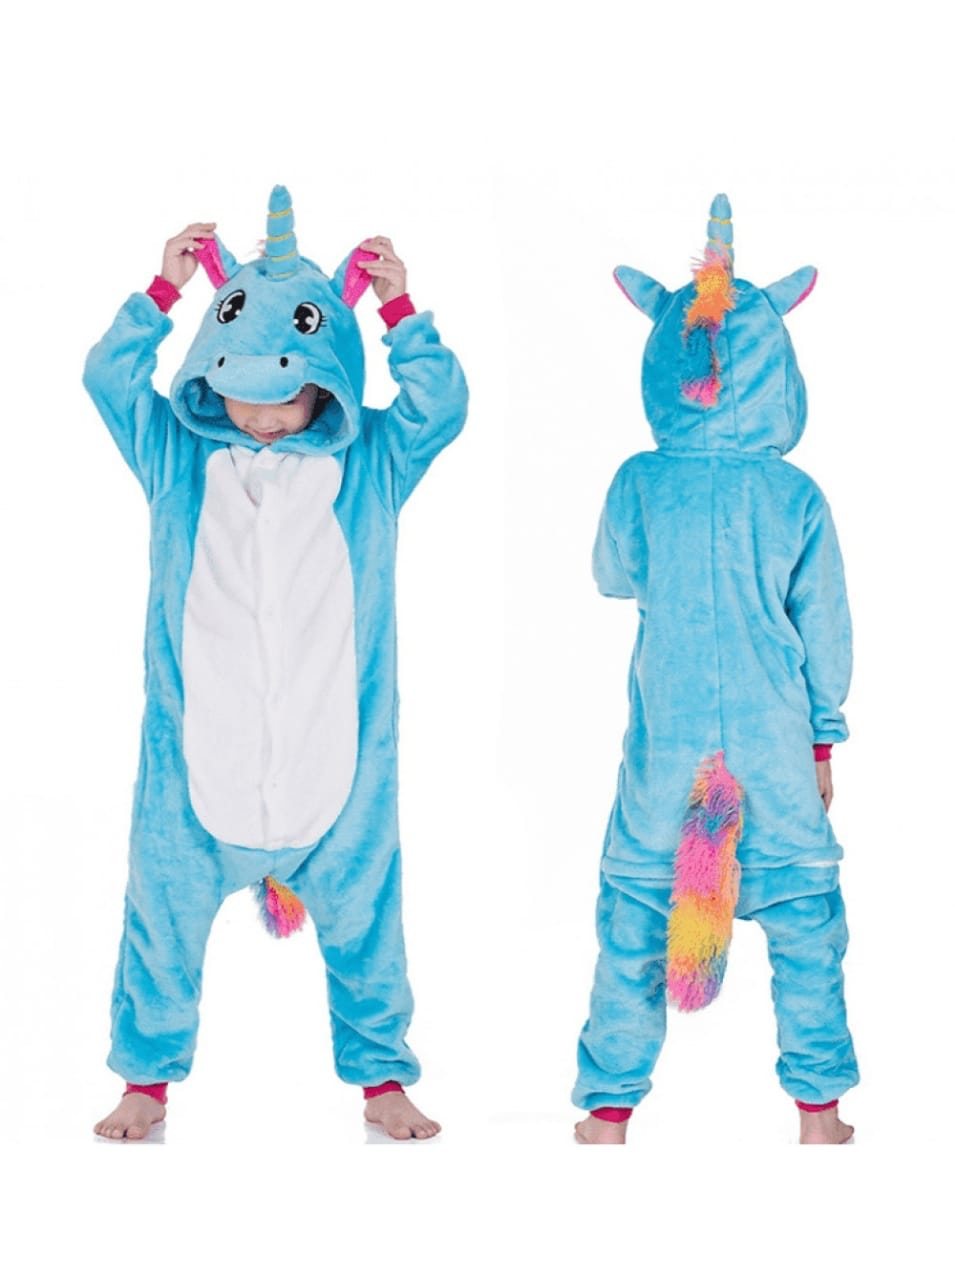 Пижамы для детей в виде животных